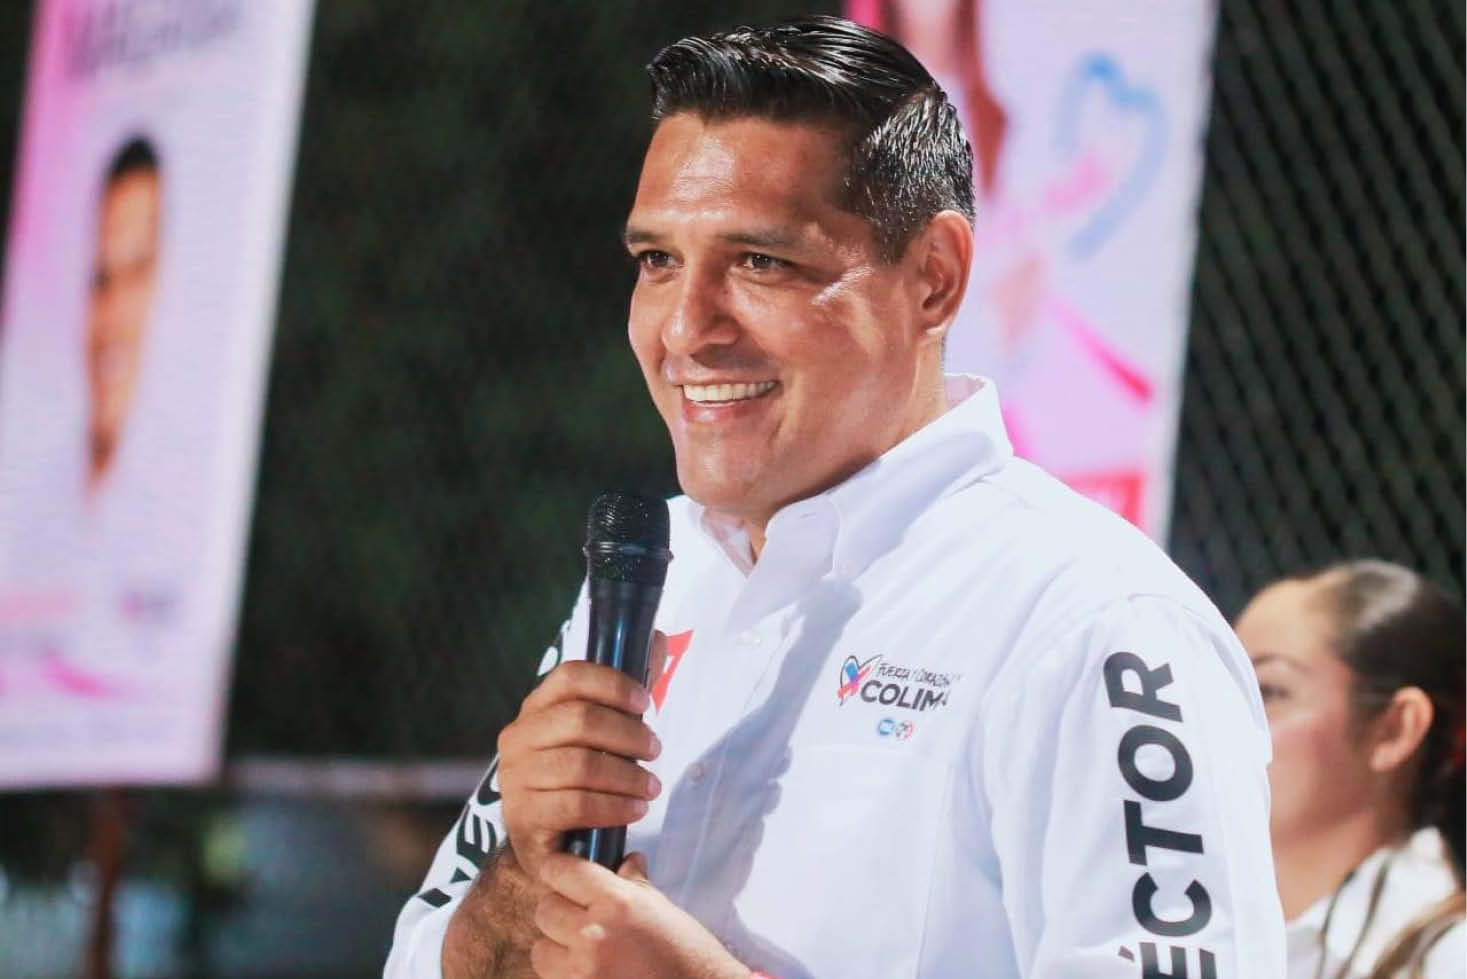 El candidato a diputado por el Distrito Local Electoral 08, Héctor Magaña Lara.